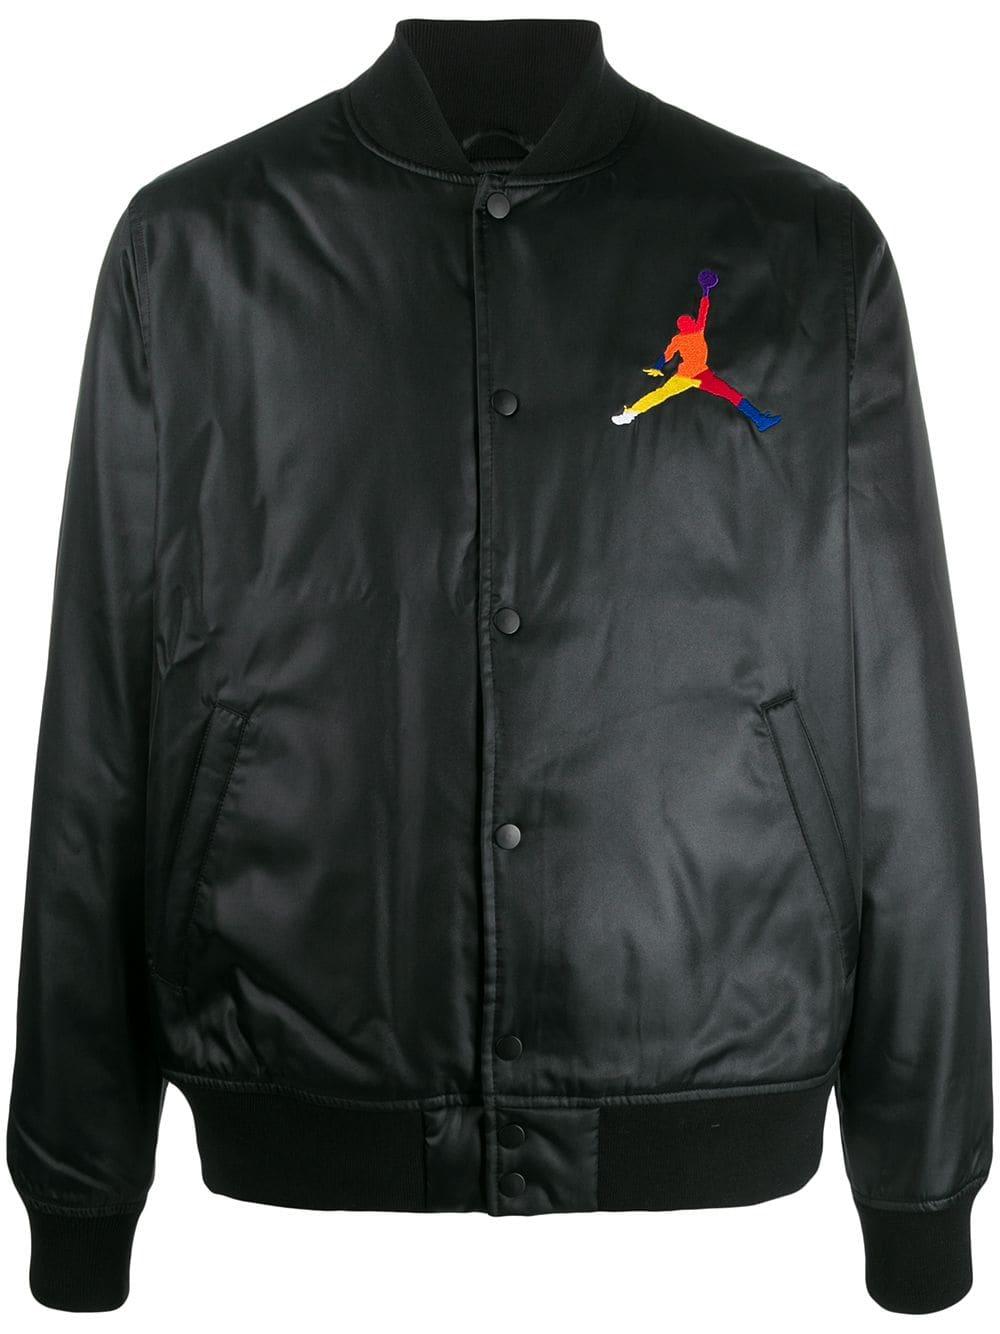 Nike Jordan Bomber Jacket in Black for Men - Lyst